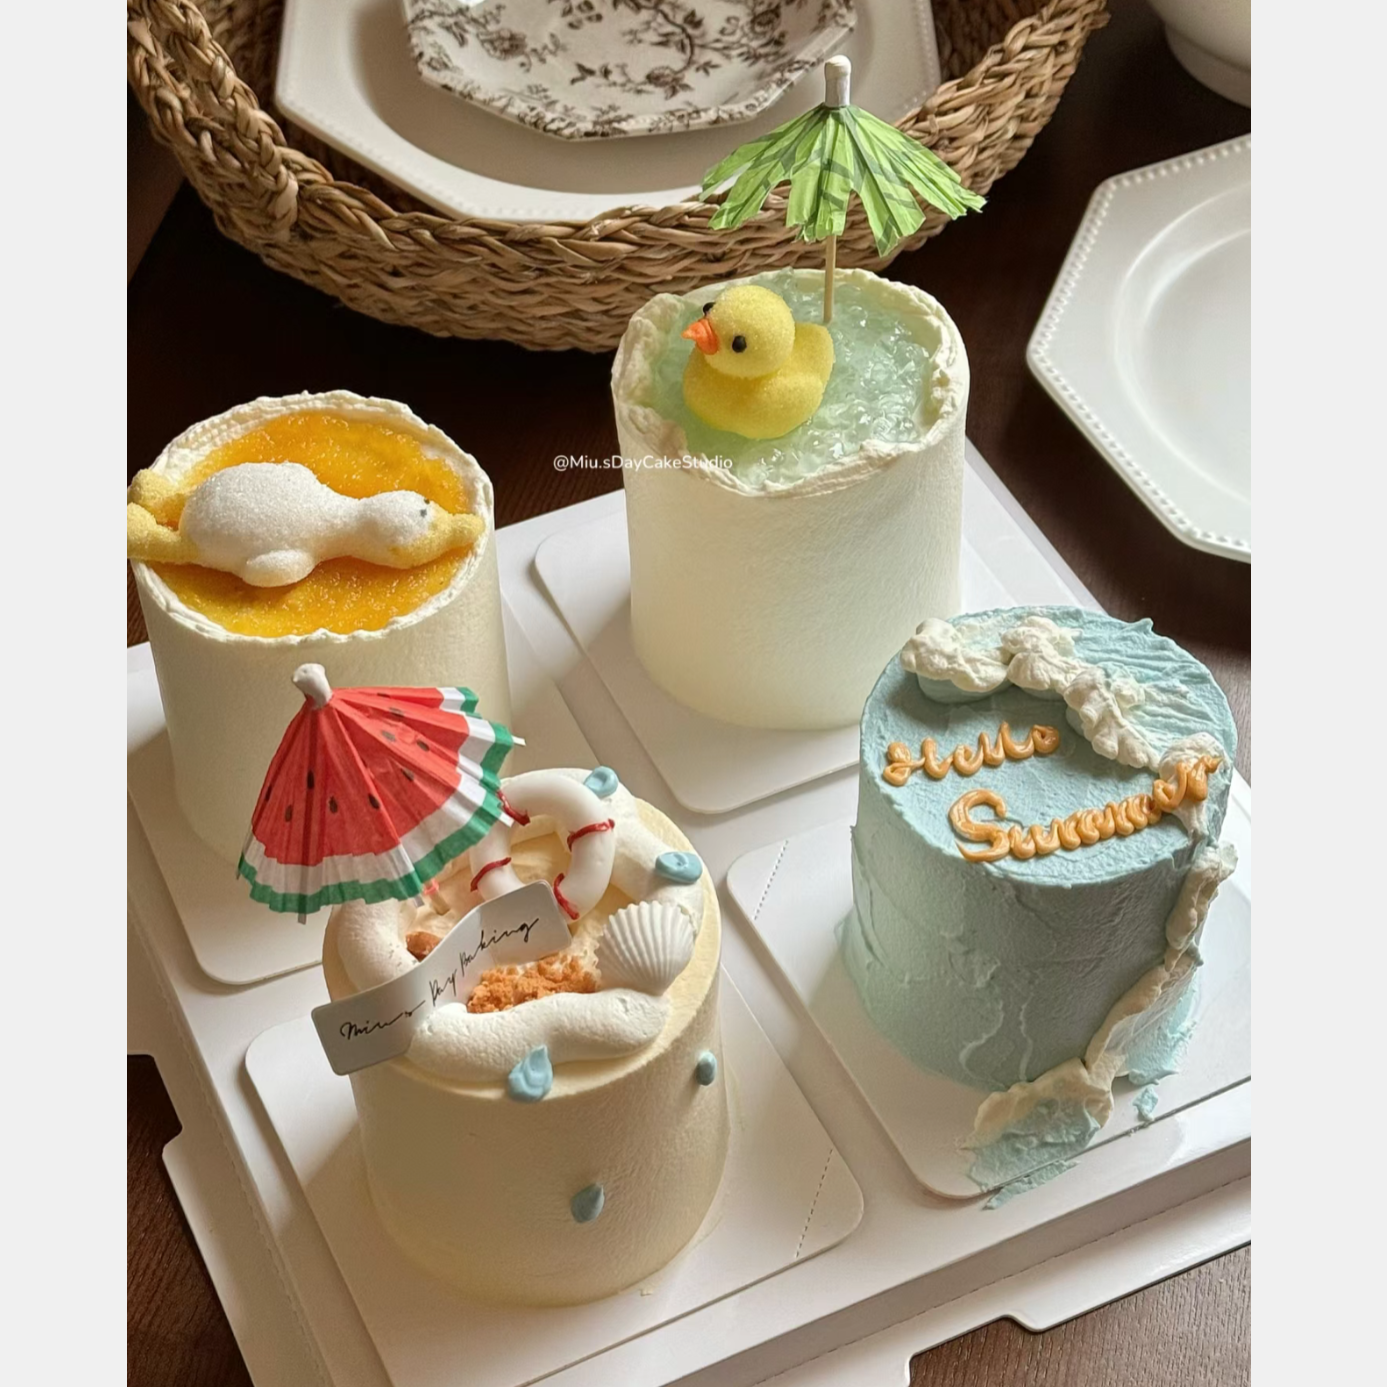 网红61儿童节躺平鸭棉花糖芒果千层切块蛋糕装饰摆件夏威夷伞插件